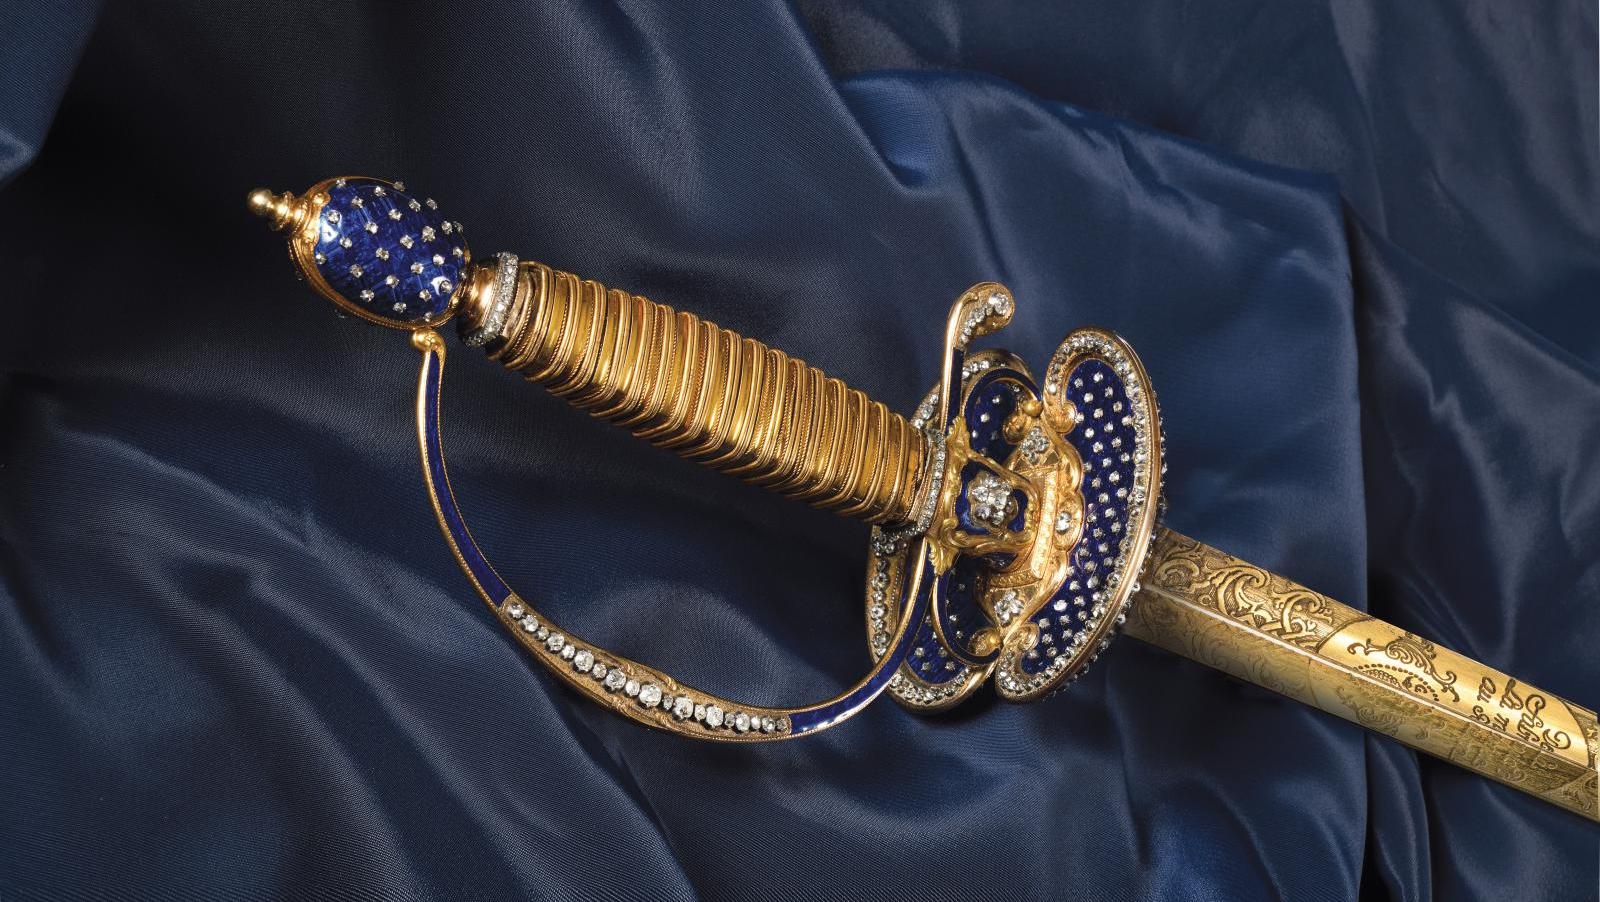 Époque Louis XVI, vers 1780, épée princière ou d’un haut dignitaire, monture en or... Une épée d’époque Louis XVI sertie comme un bijou